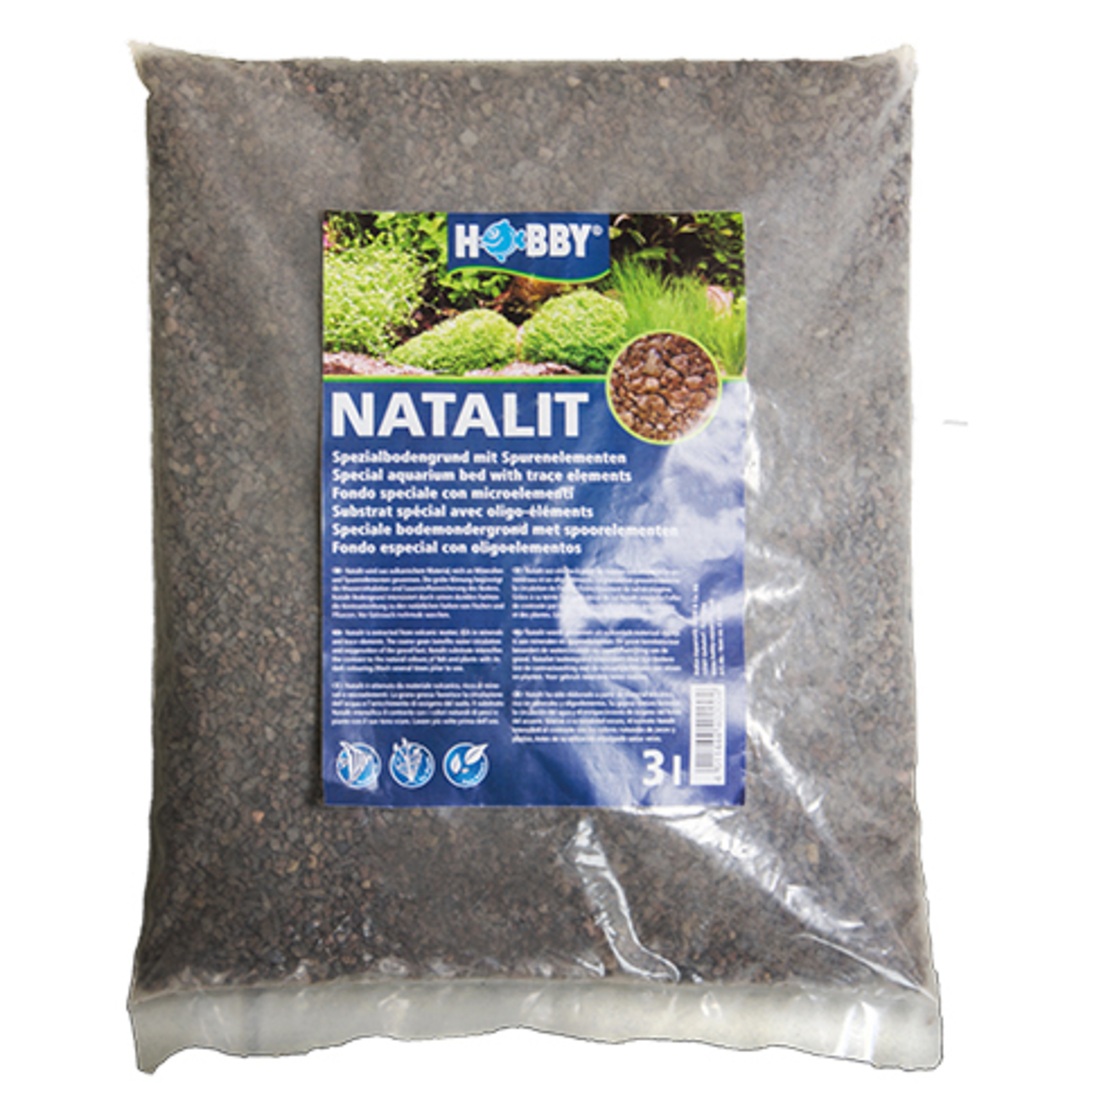 מצע וולקני לצמחיה 3 ליטר | Natalit